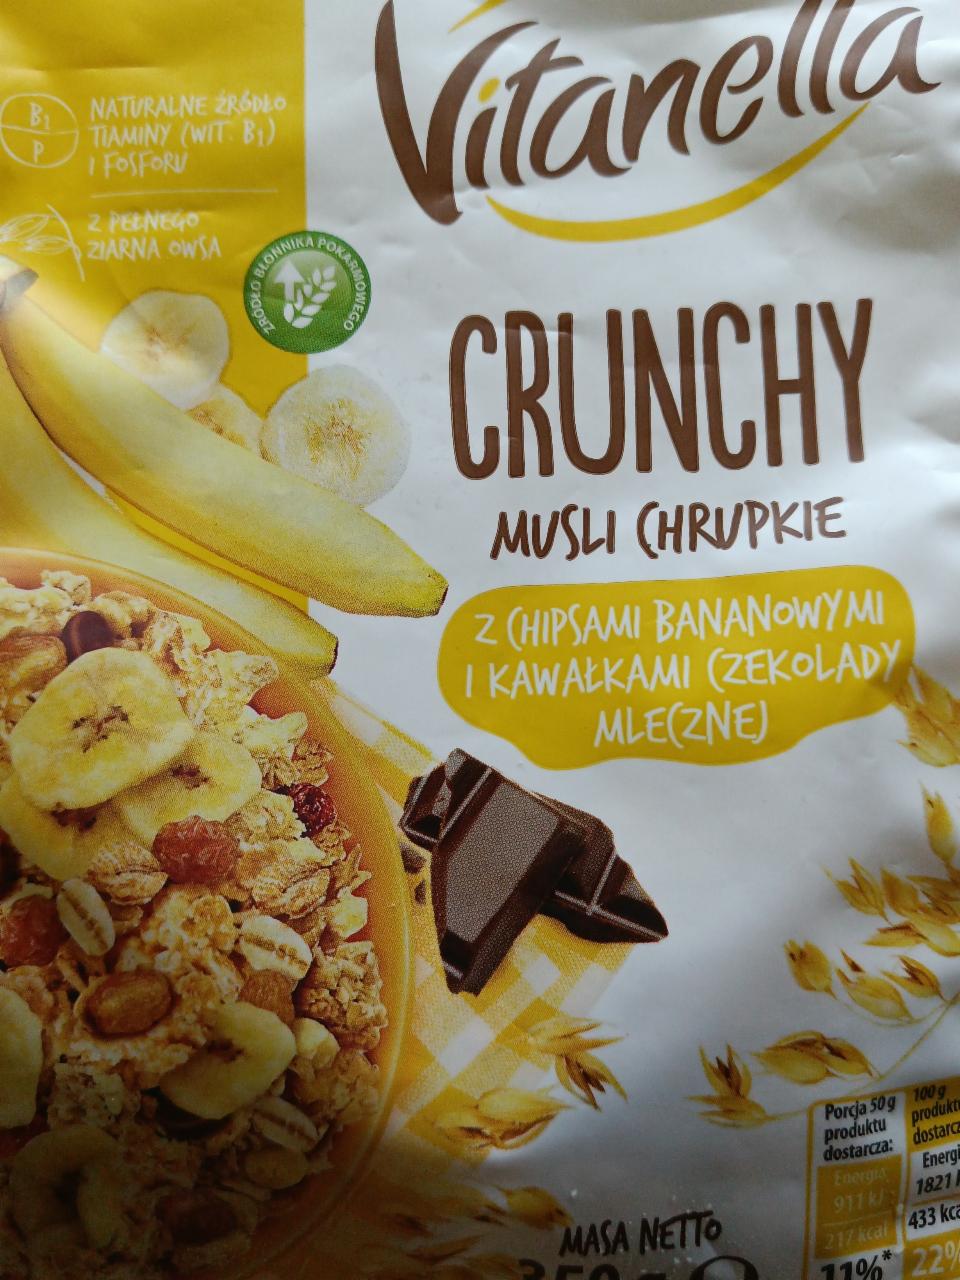 Zdjęcia - Crunchy Musli Chrupkie z Chipsami Bananowymi i Kawałkami Czekolady Mlecznej Vitanella